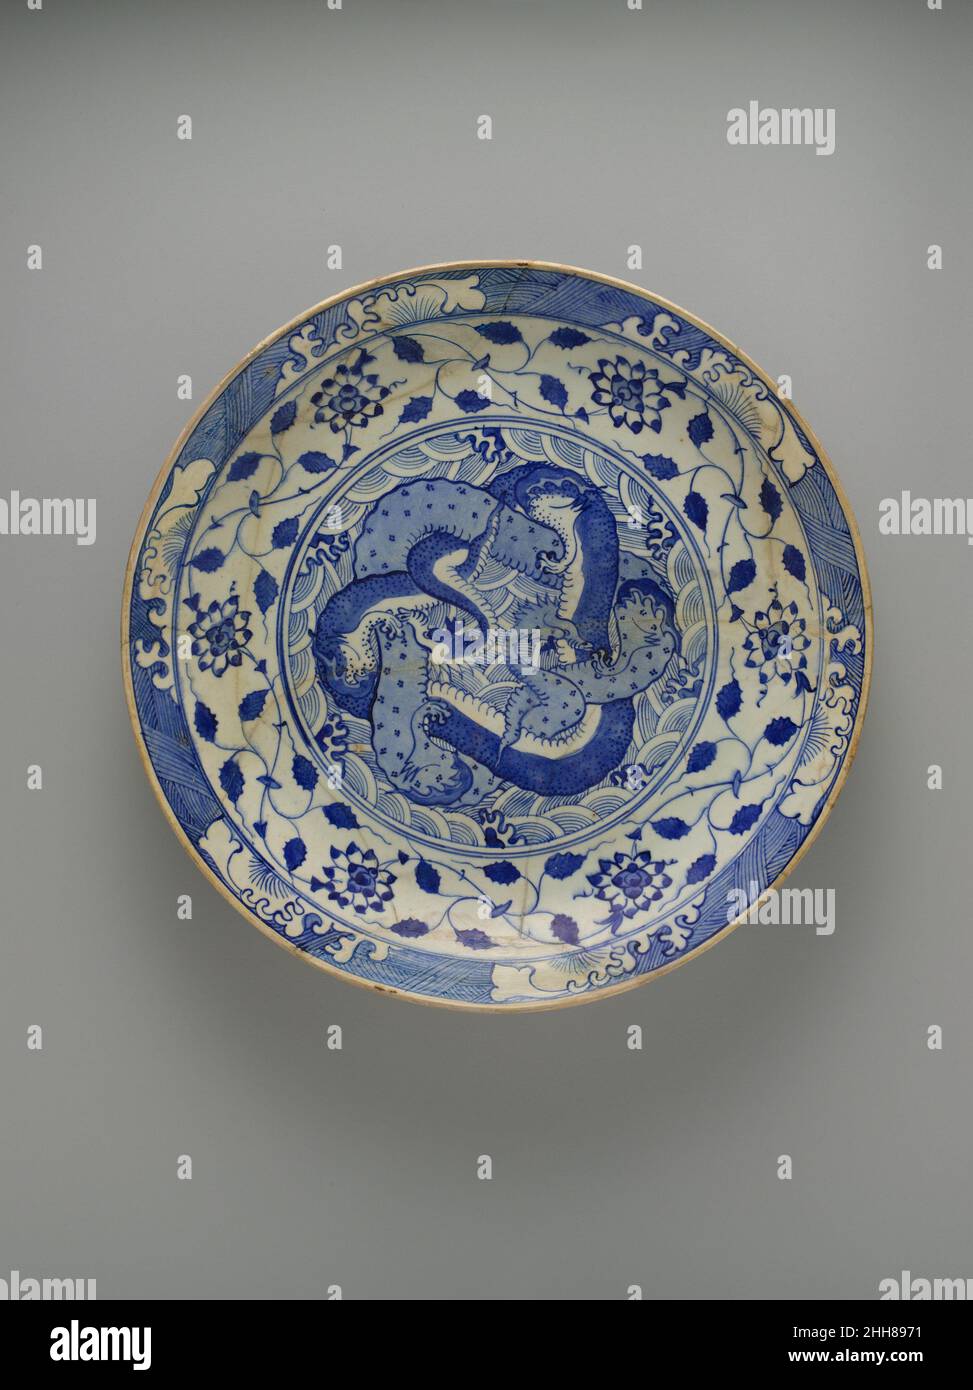 Gericht mit zwei ineinander verflochtenen Drachen Ca. 1640 Obwohl chinesisches blau-weißes Porzellan seit dem 14. Jahrhundert einen starken Einfluss auf die Keramikproduktion des islamischen Nahen Ostens ausgeübt hatte, trat dieses Phänomen im 17. Jahrhundert in eine neue Phase ein, als persische Keramiker auf den Geschmack im Safavid Iran und im Ausland für chinesisches Exportporzellan reagierten, Bekannt als Kraak Ware.die Designs auf diesem großen Teller passen Elemente aus chinesischem blau-weißem Porzellan verschiedener Datteln an. Die Mitte der Schale ist dicht mit zwei verschlungen Drachen geschmückt, einer hellblau und der andere dunkelblau mit einem wh Stockfoto